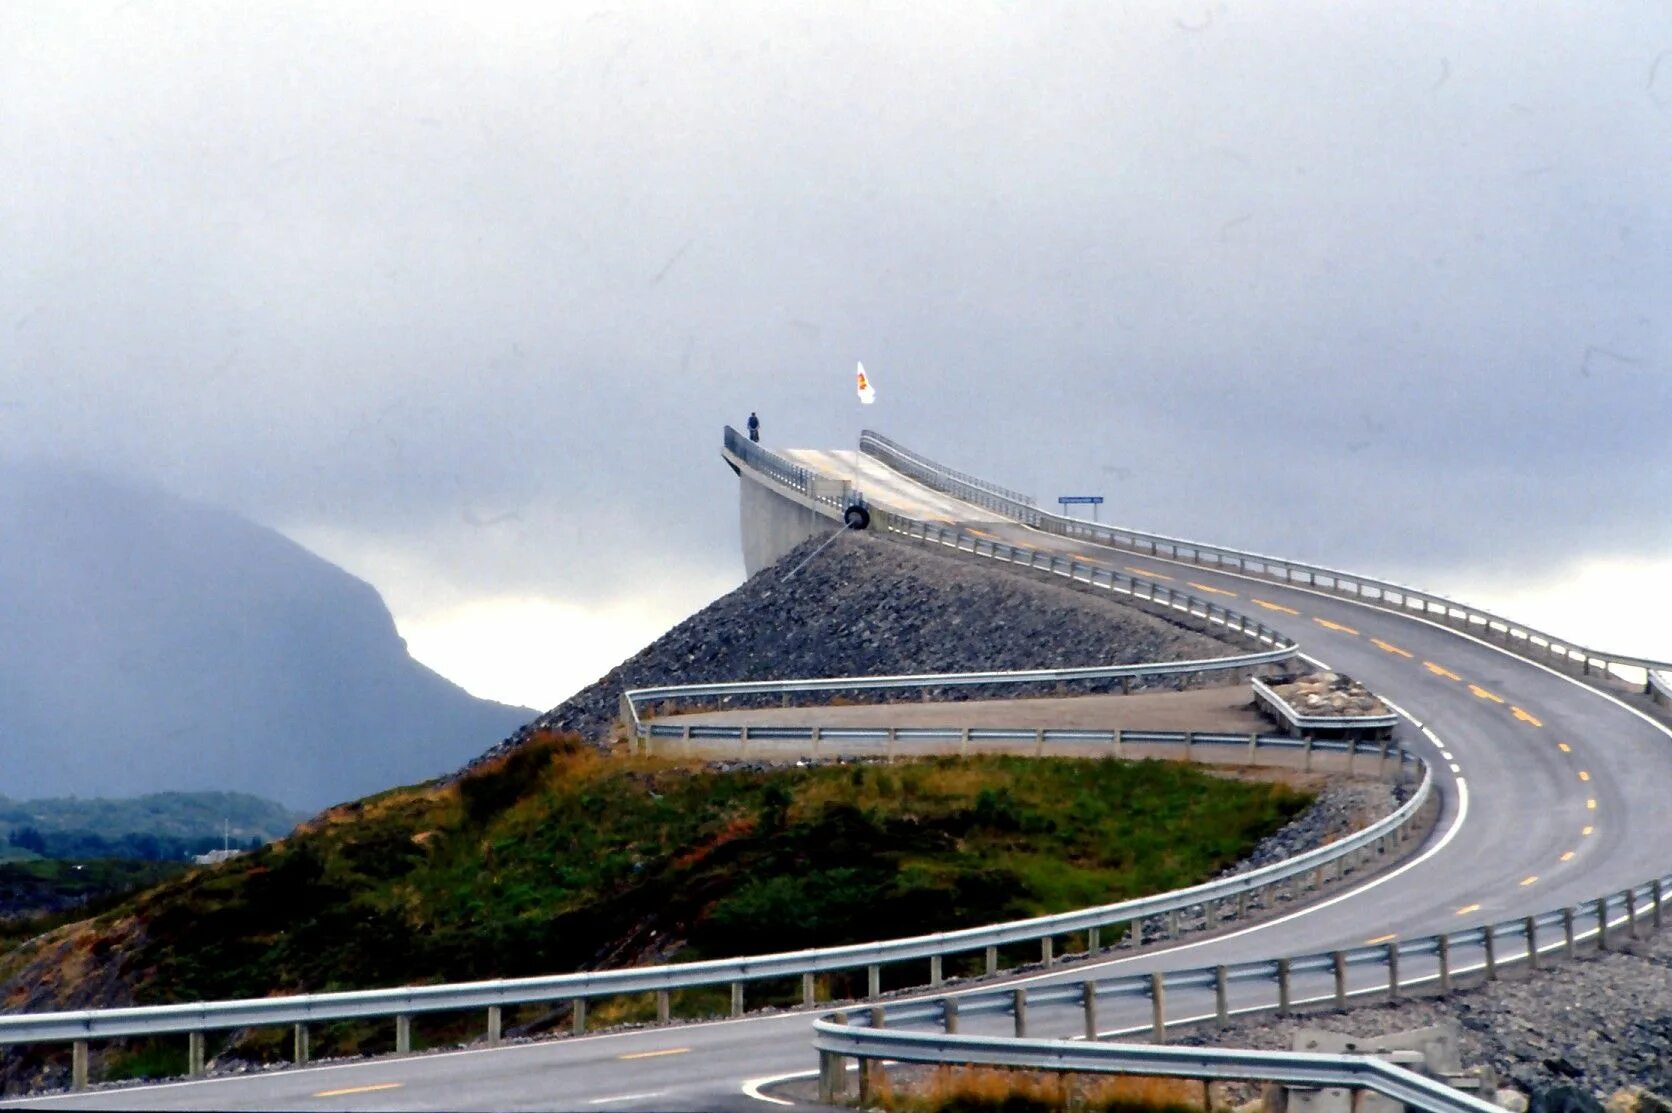 Мост Storseisundet, Норвегия. Дорога Атлантик роуд Норвегия. Storsizandeckij most norwegija. Мост “Storseisundet Bridge”. Никуда откуда